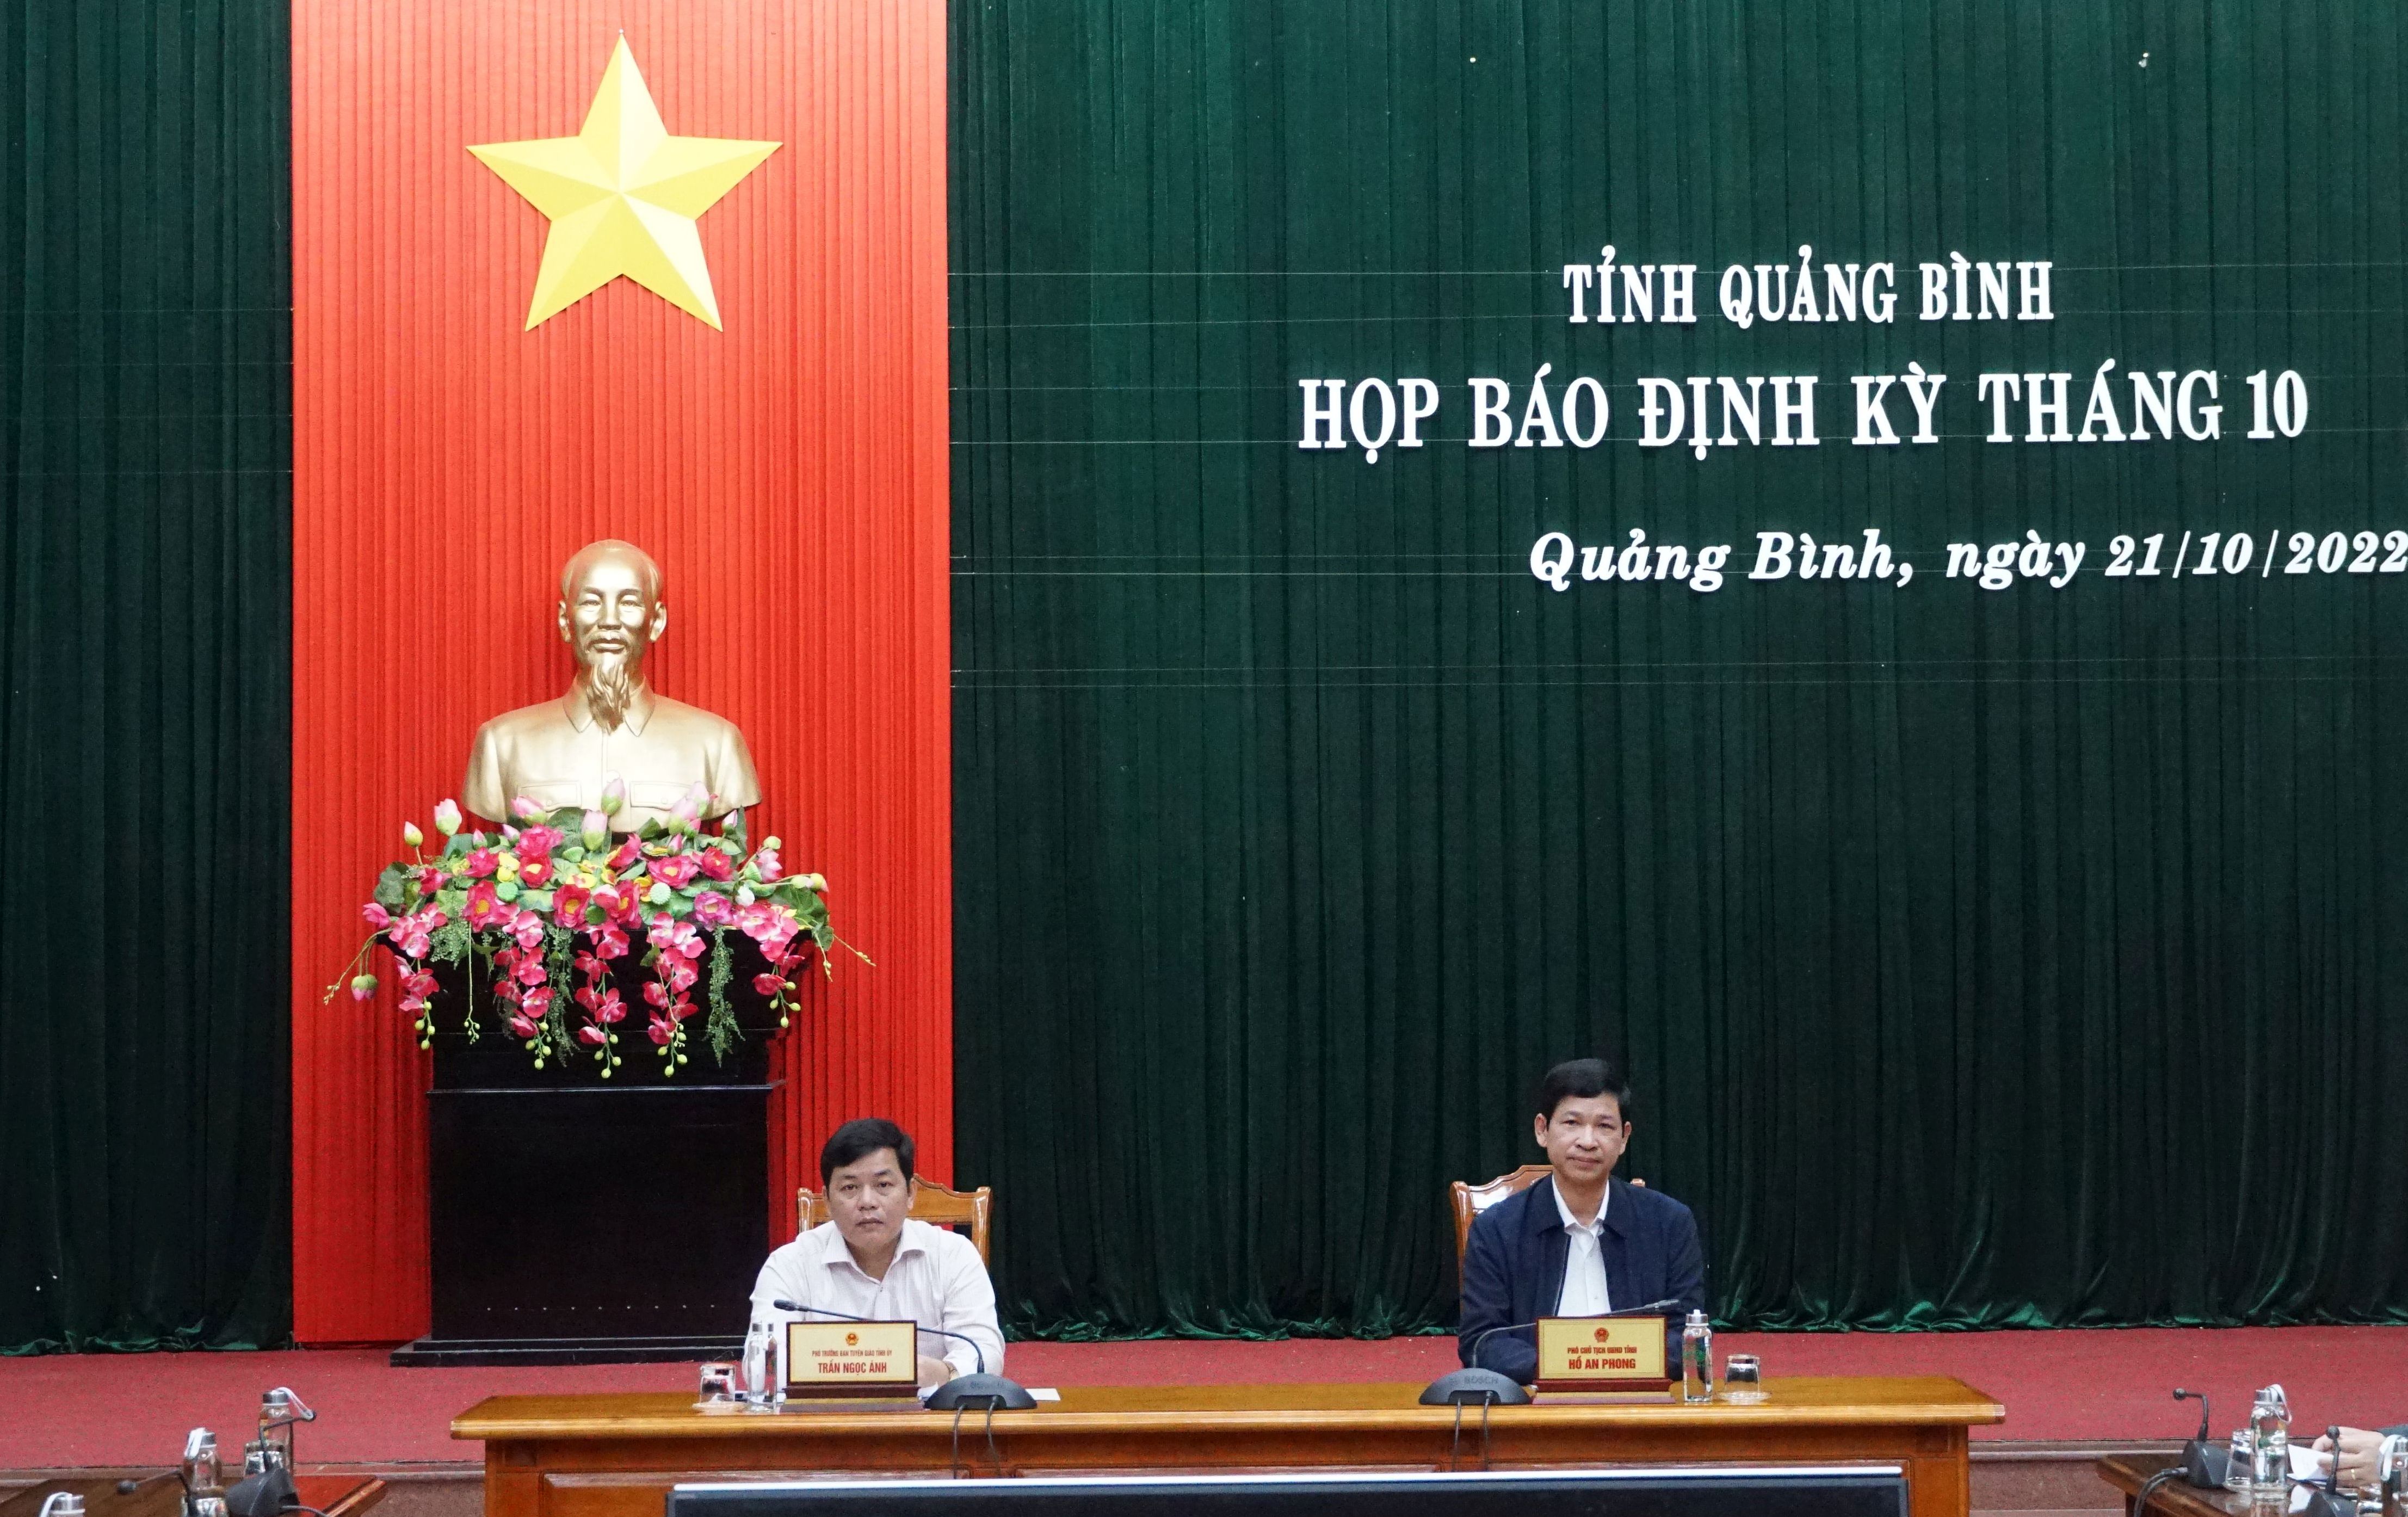 Đồng chí Phó Chủ tịch UBND tỉnh Hồ An Phong và đồng chí Phó Trưởng ban Tuyên giáo Tỉnh ủy Trần Ngọc Ánh chủ trì buổi họp báo.